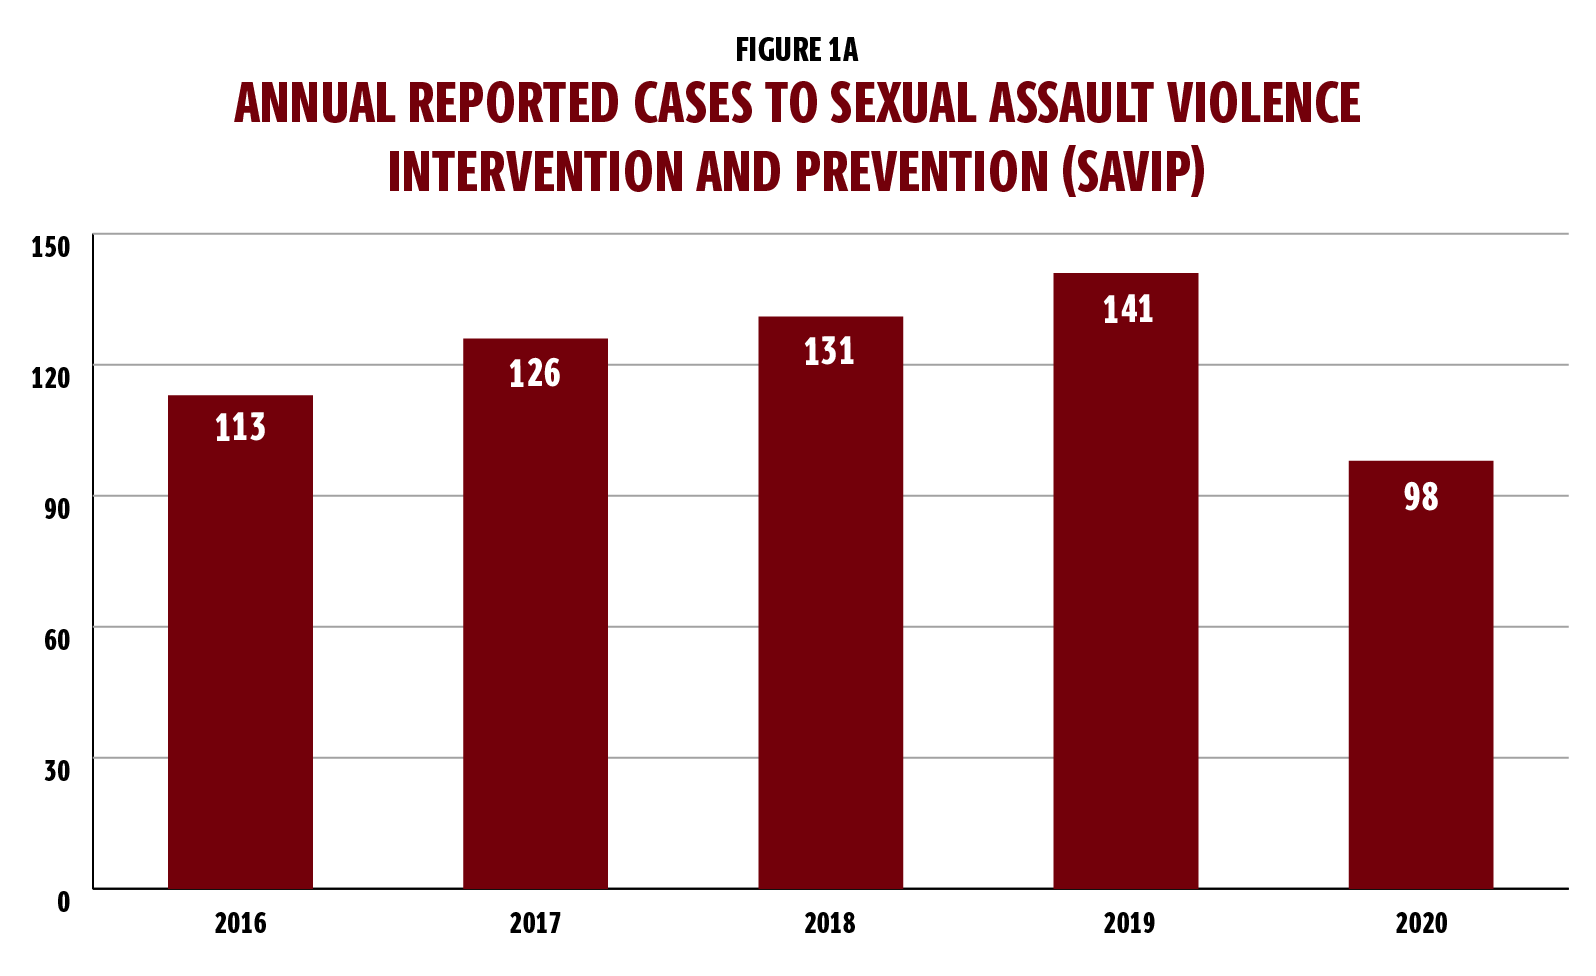 图1a是一个柱状图，显示了每年向性侵犯暴力干预和预防(也称为SAVIP)报告的案件。图表显示，2016年有113例;2017年126例;2018年131例;2019年141例，2020年98例。